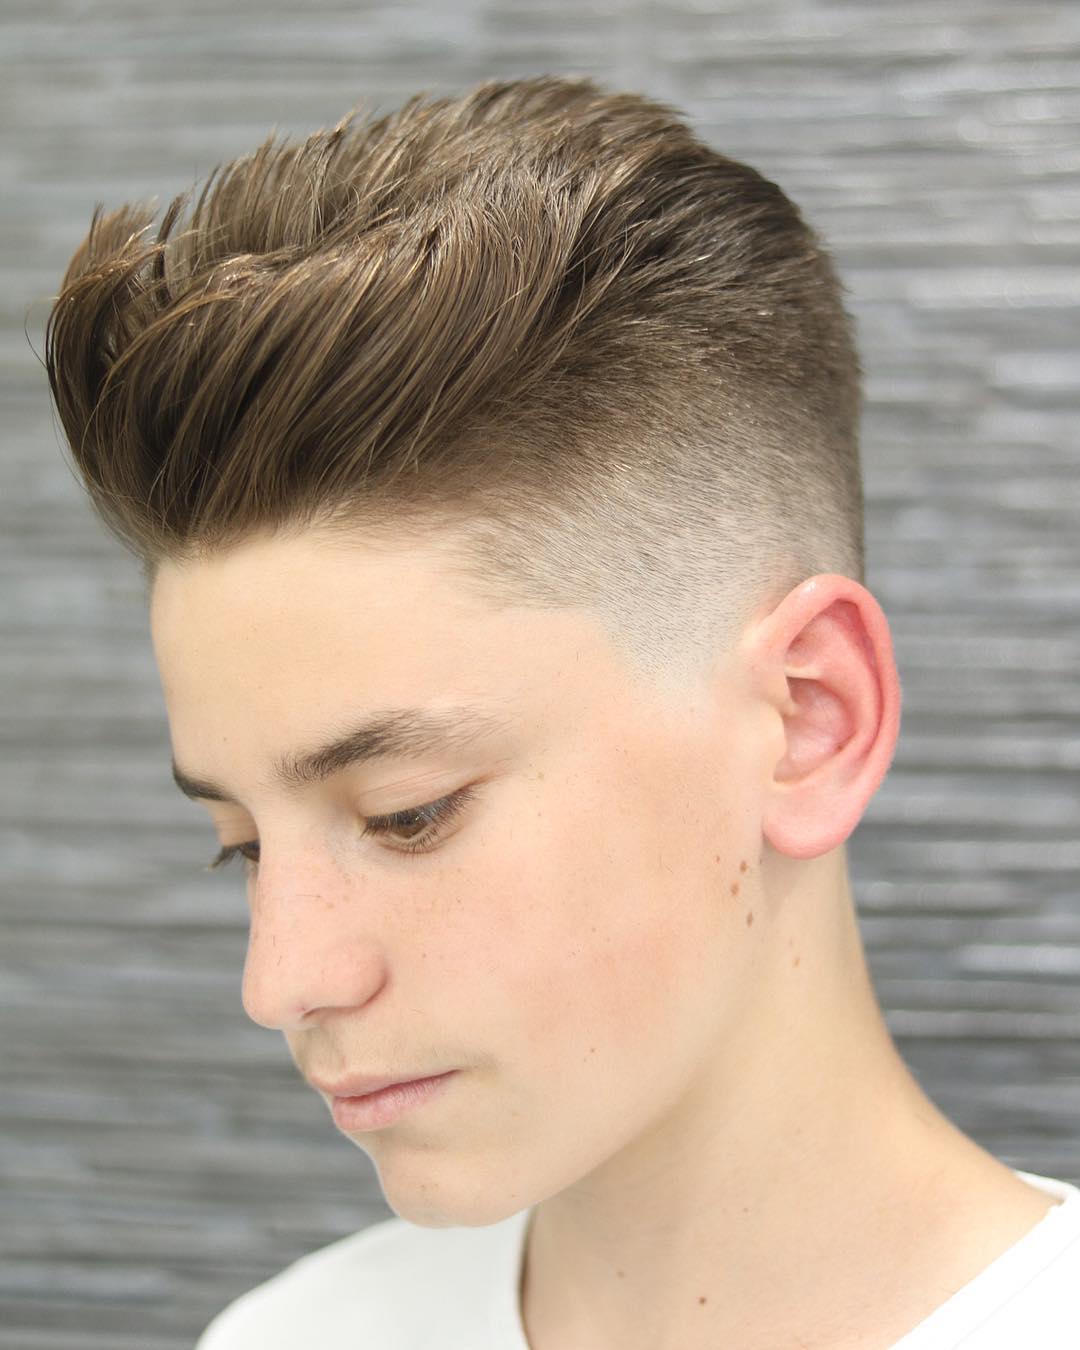 Top 35 Popular Teen Boy Hairstyles | Best Teen Boy Haircut For Men 2020